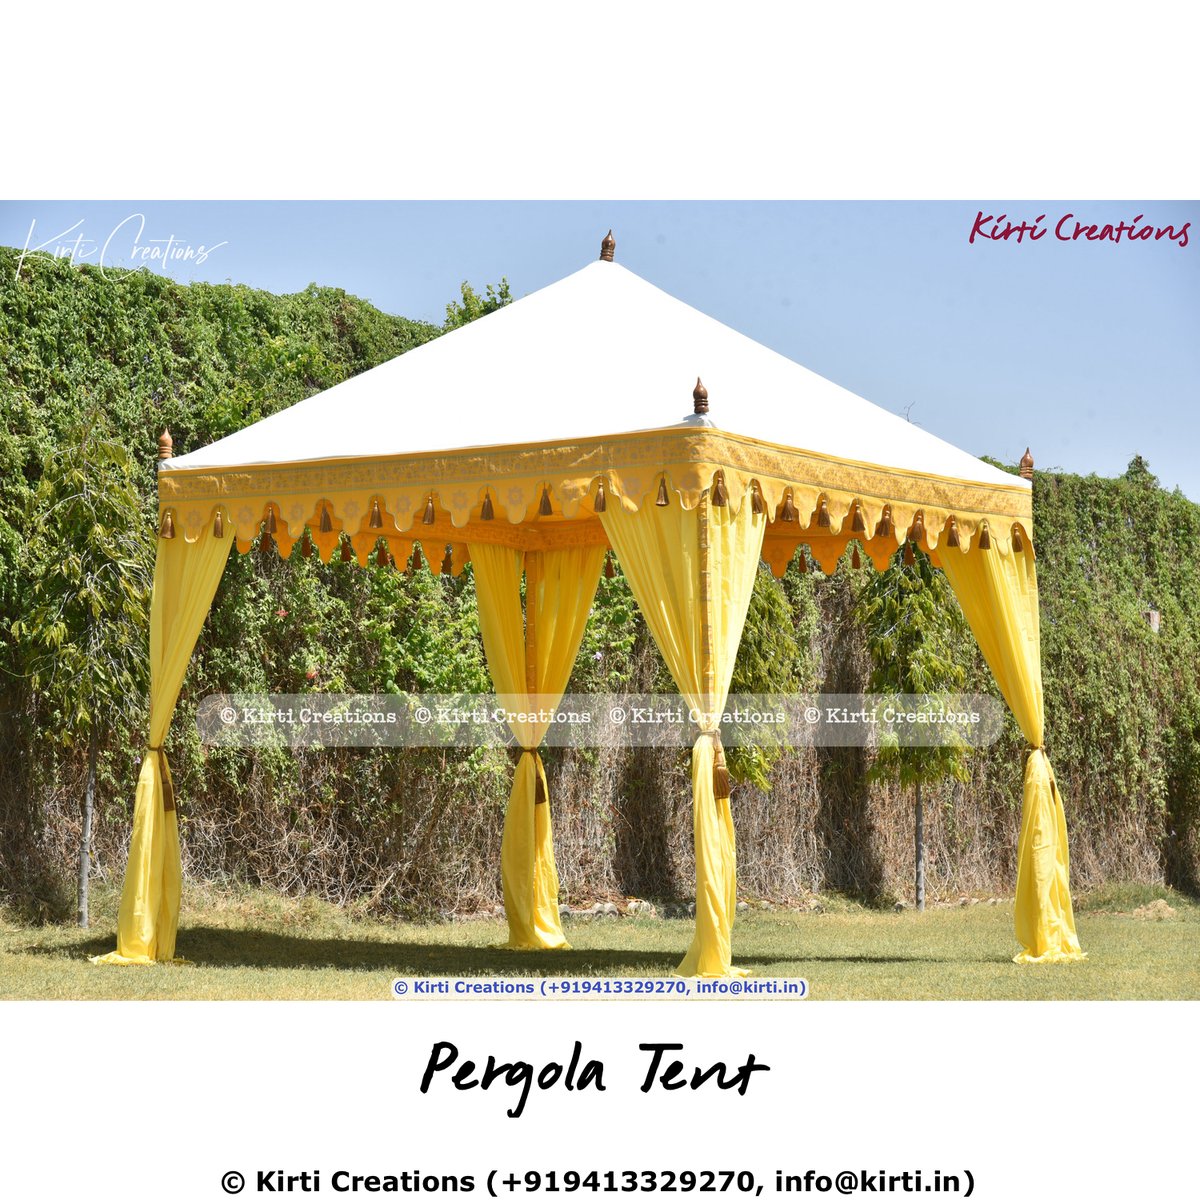 Elegant Pergola Tent
.
#indiantent #indiantents #indianwedding #weddingdecor #indianweddingtheme #luxurywedding #tentedwedding #shamiana #shamiyana
.
Visit us at indiantent.com